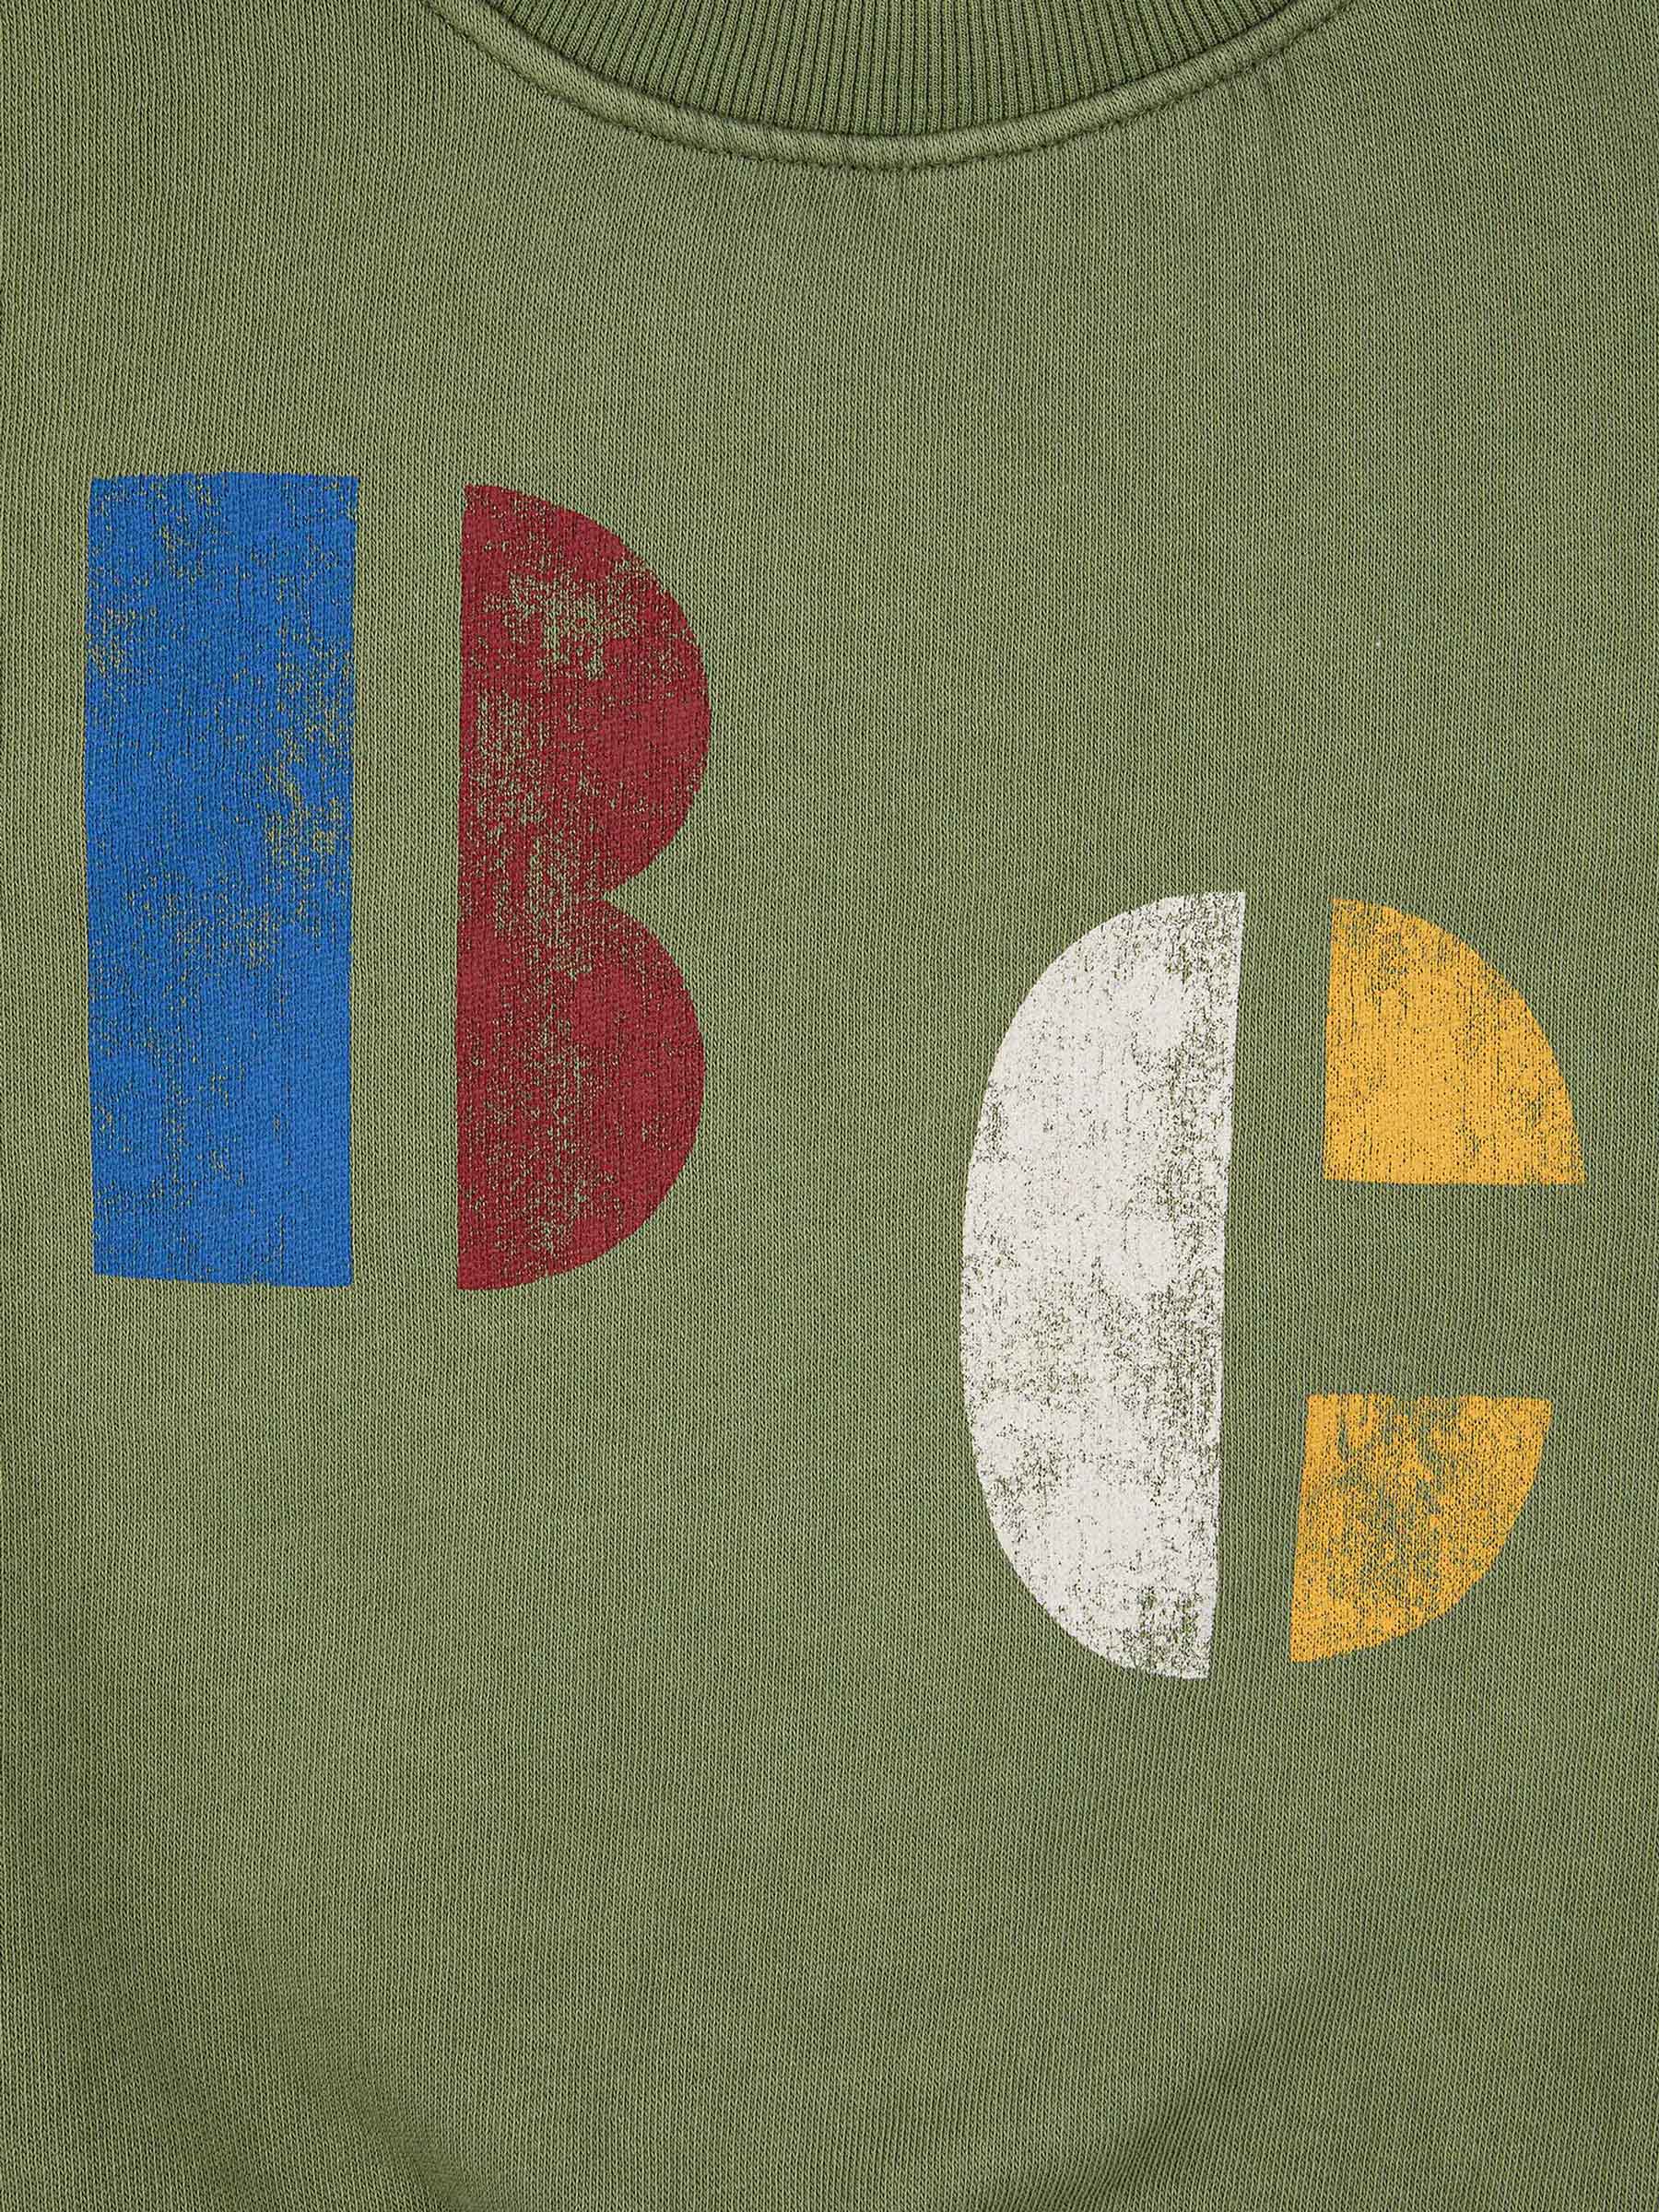 Multicolor B.C sweatshirt - 2-3Y